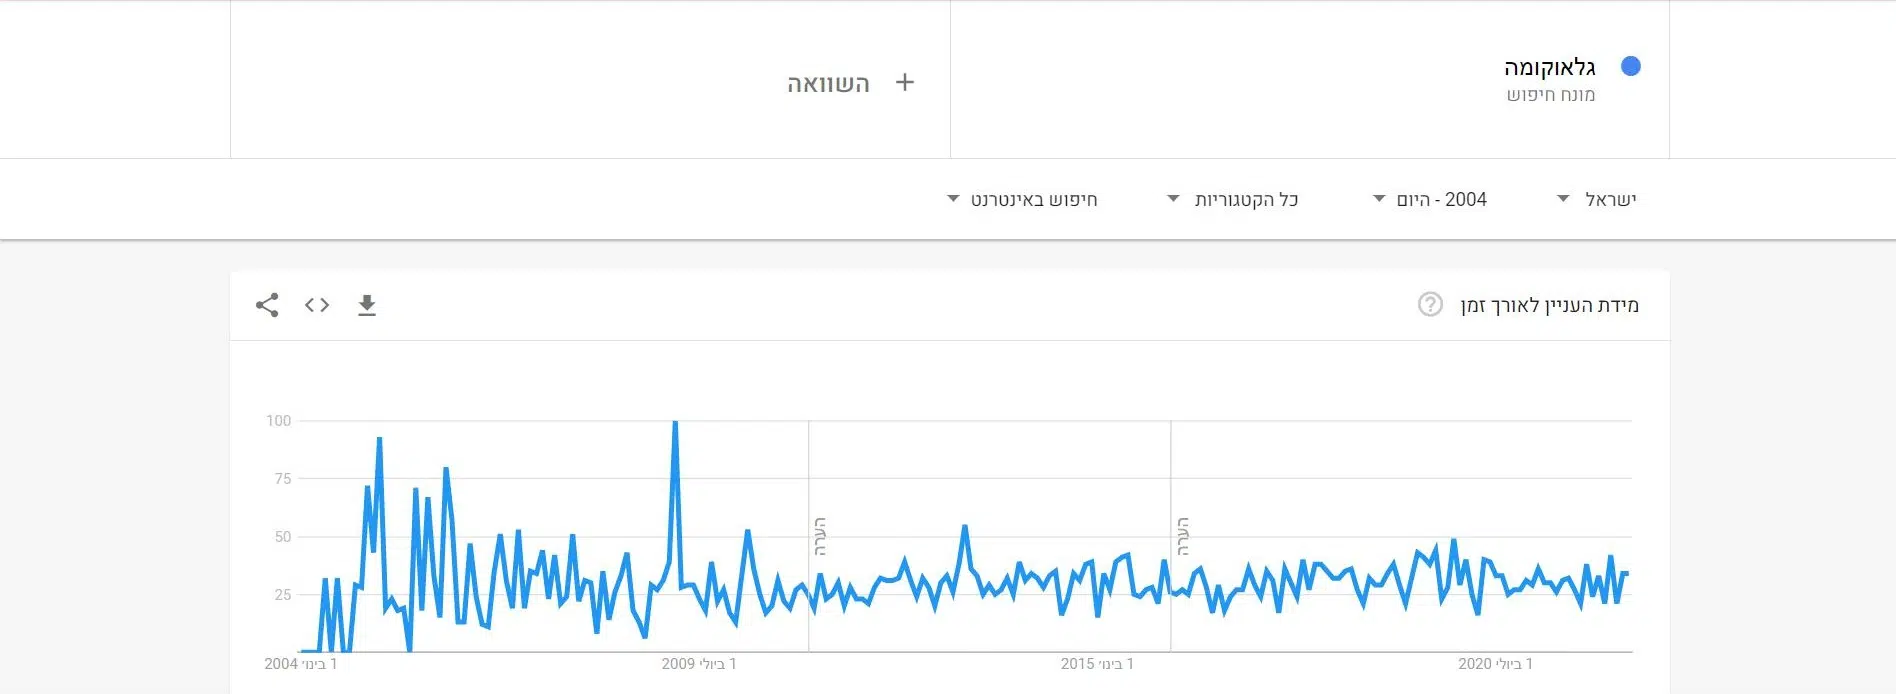 מגמות חיפוש בגוגל של המילה "גלאוקומה" מאז 2004, לפי Google Trends